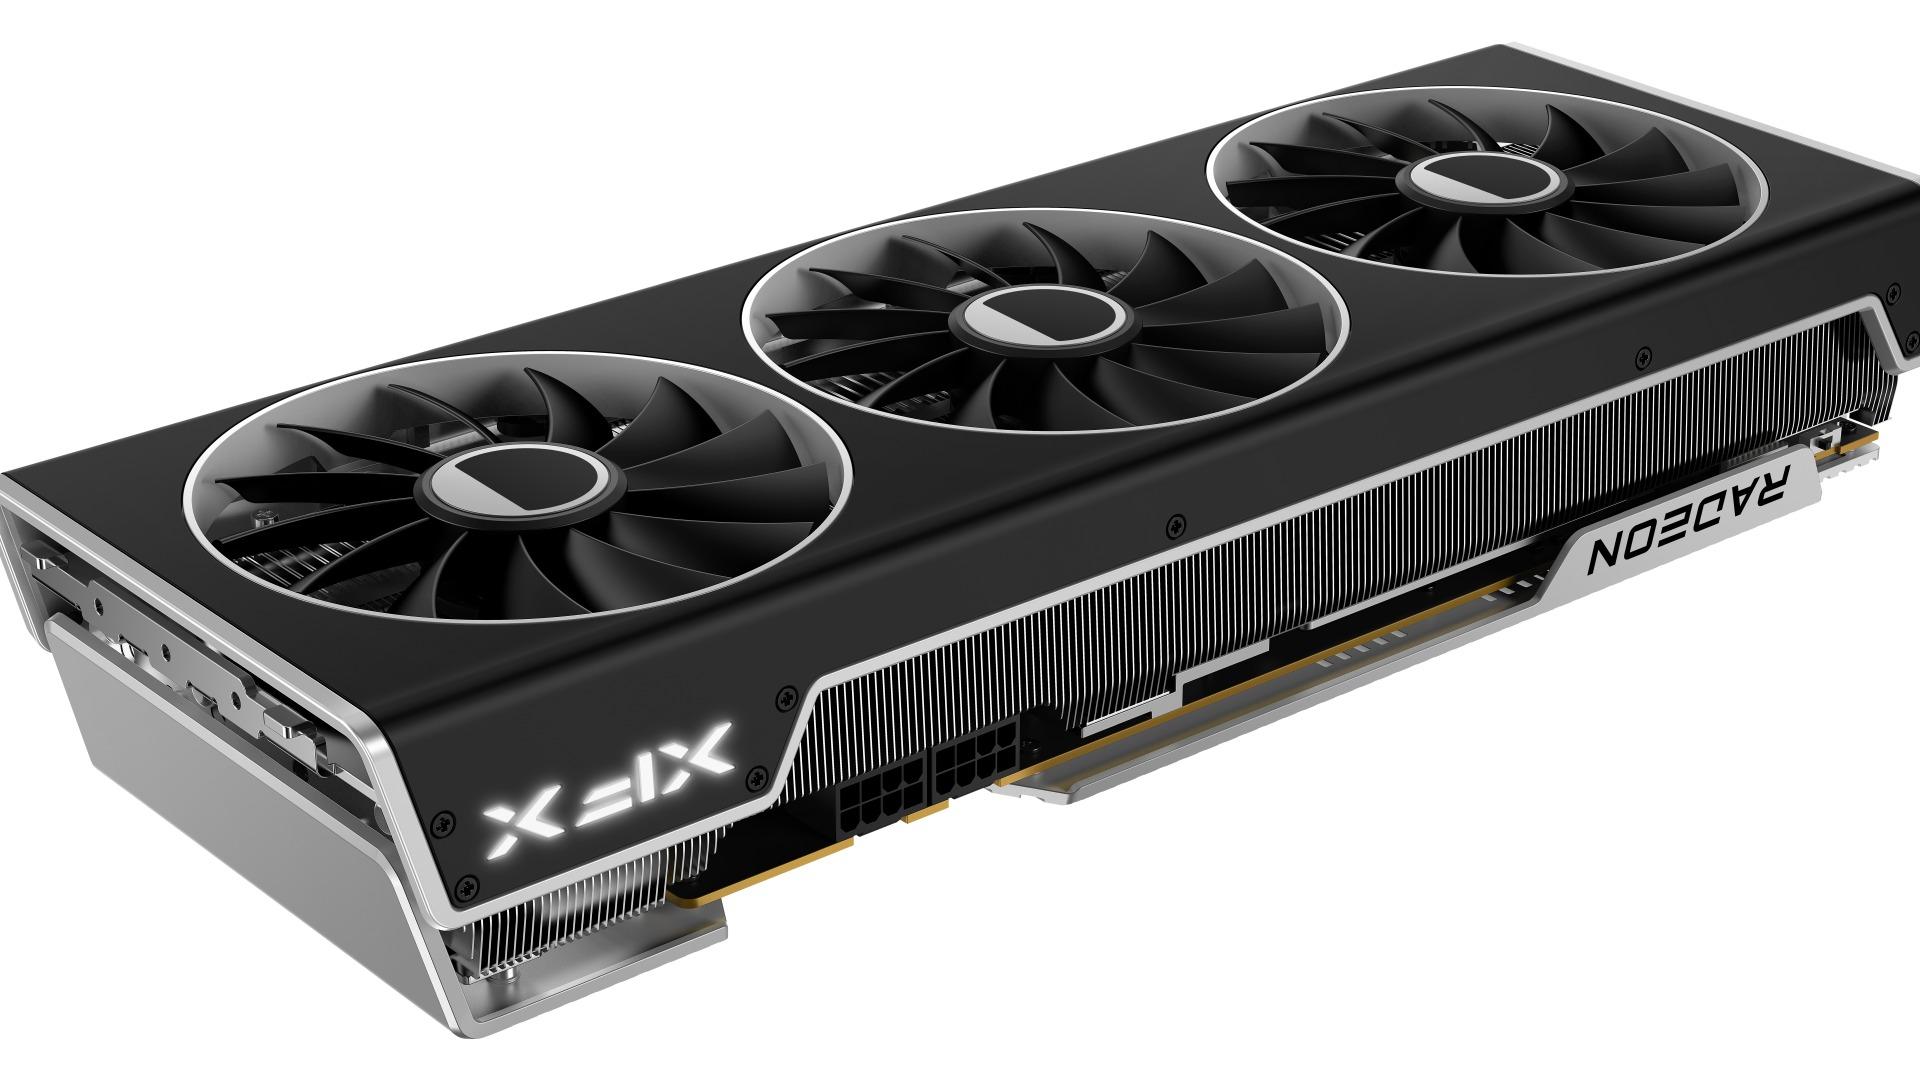 XFX Speedster MERC310 RX 7900 XT Black RX-79TMERCB9 AMD GPU Processor